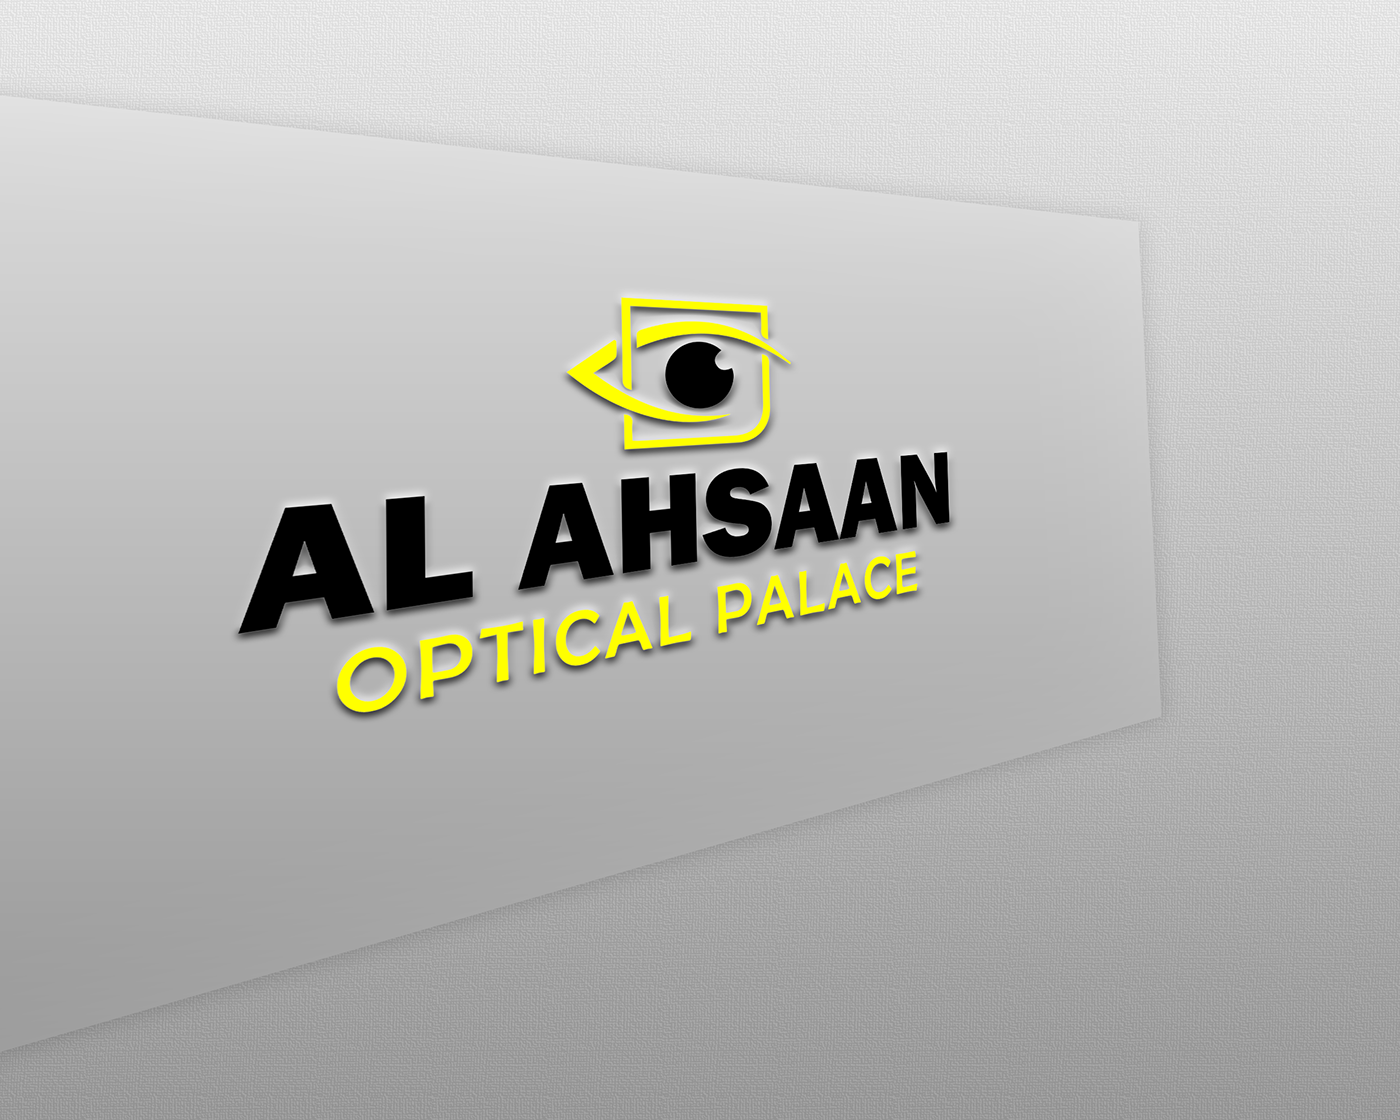 optical optical logo optical palace palace palace logo al ahsaan Eye Logo eyesight optics optic lenz